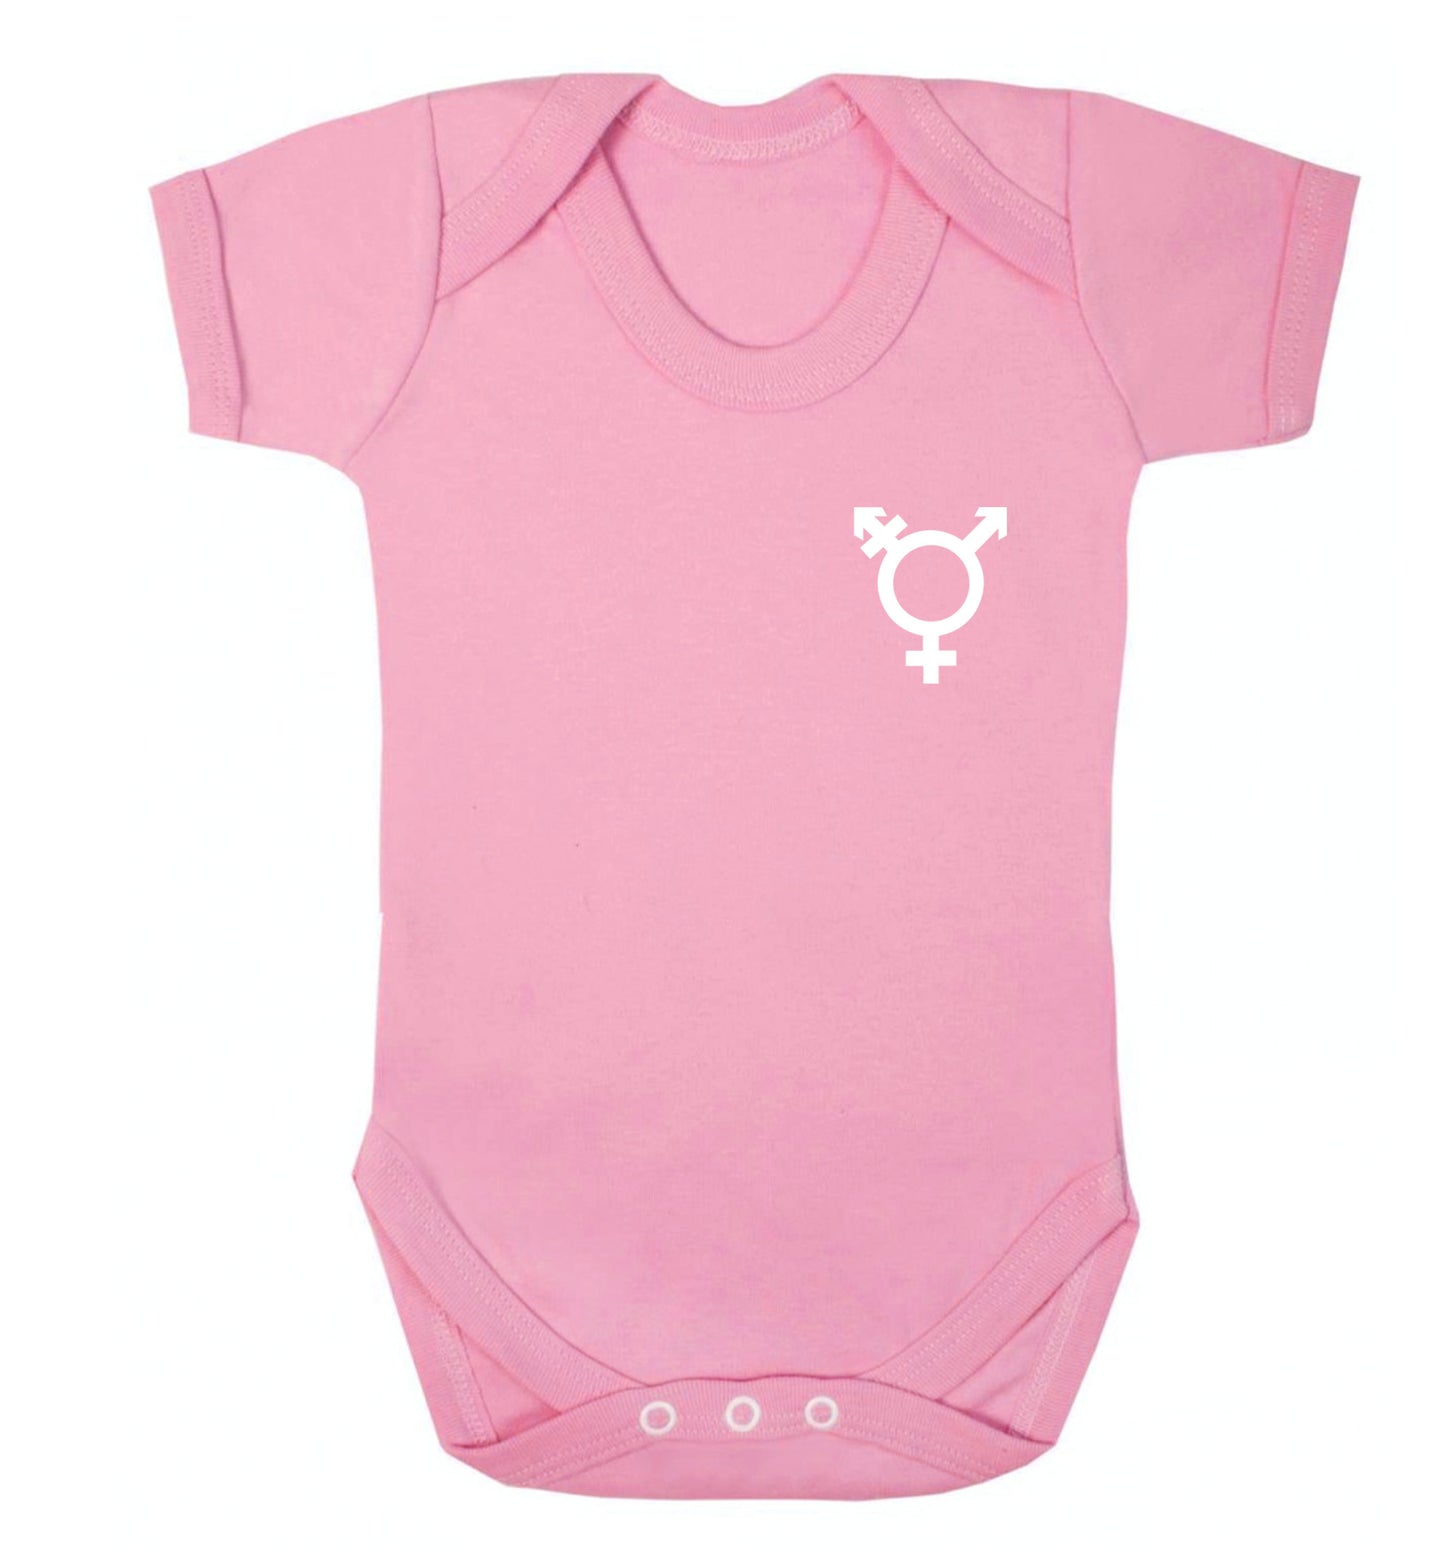 Trans gender symbol pocket Baby Vest pale pink 18-24 months